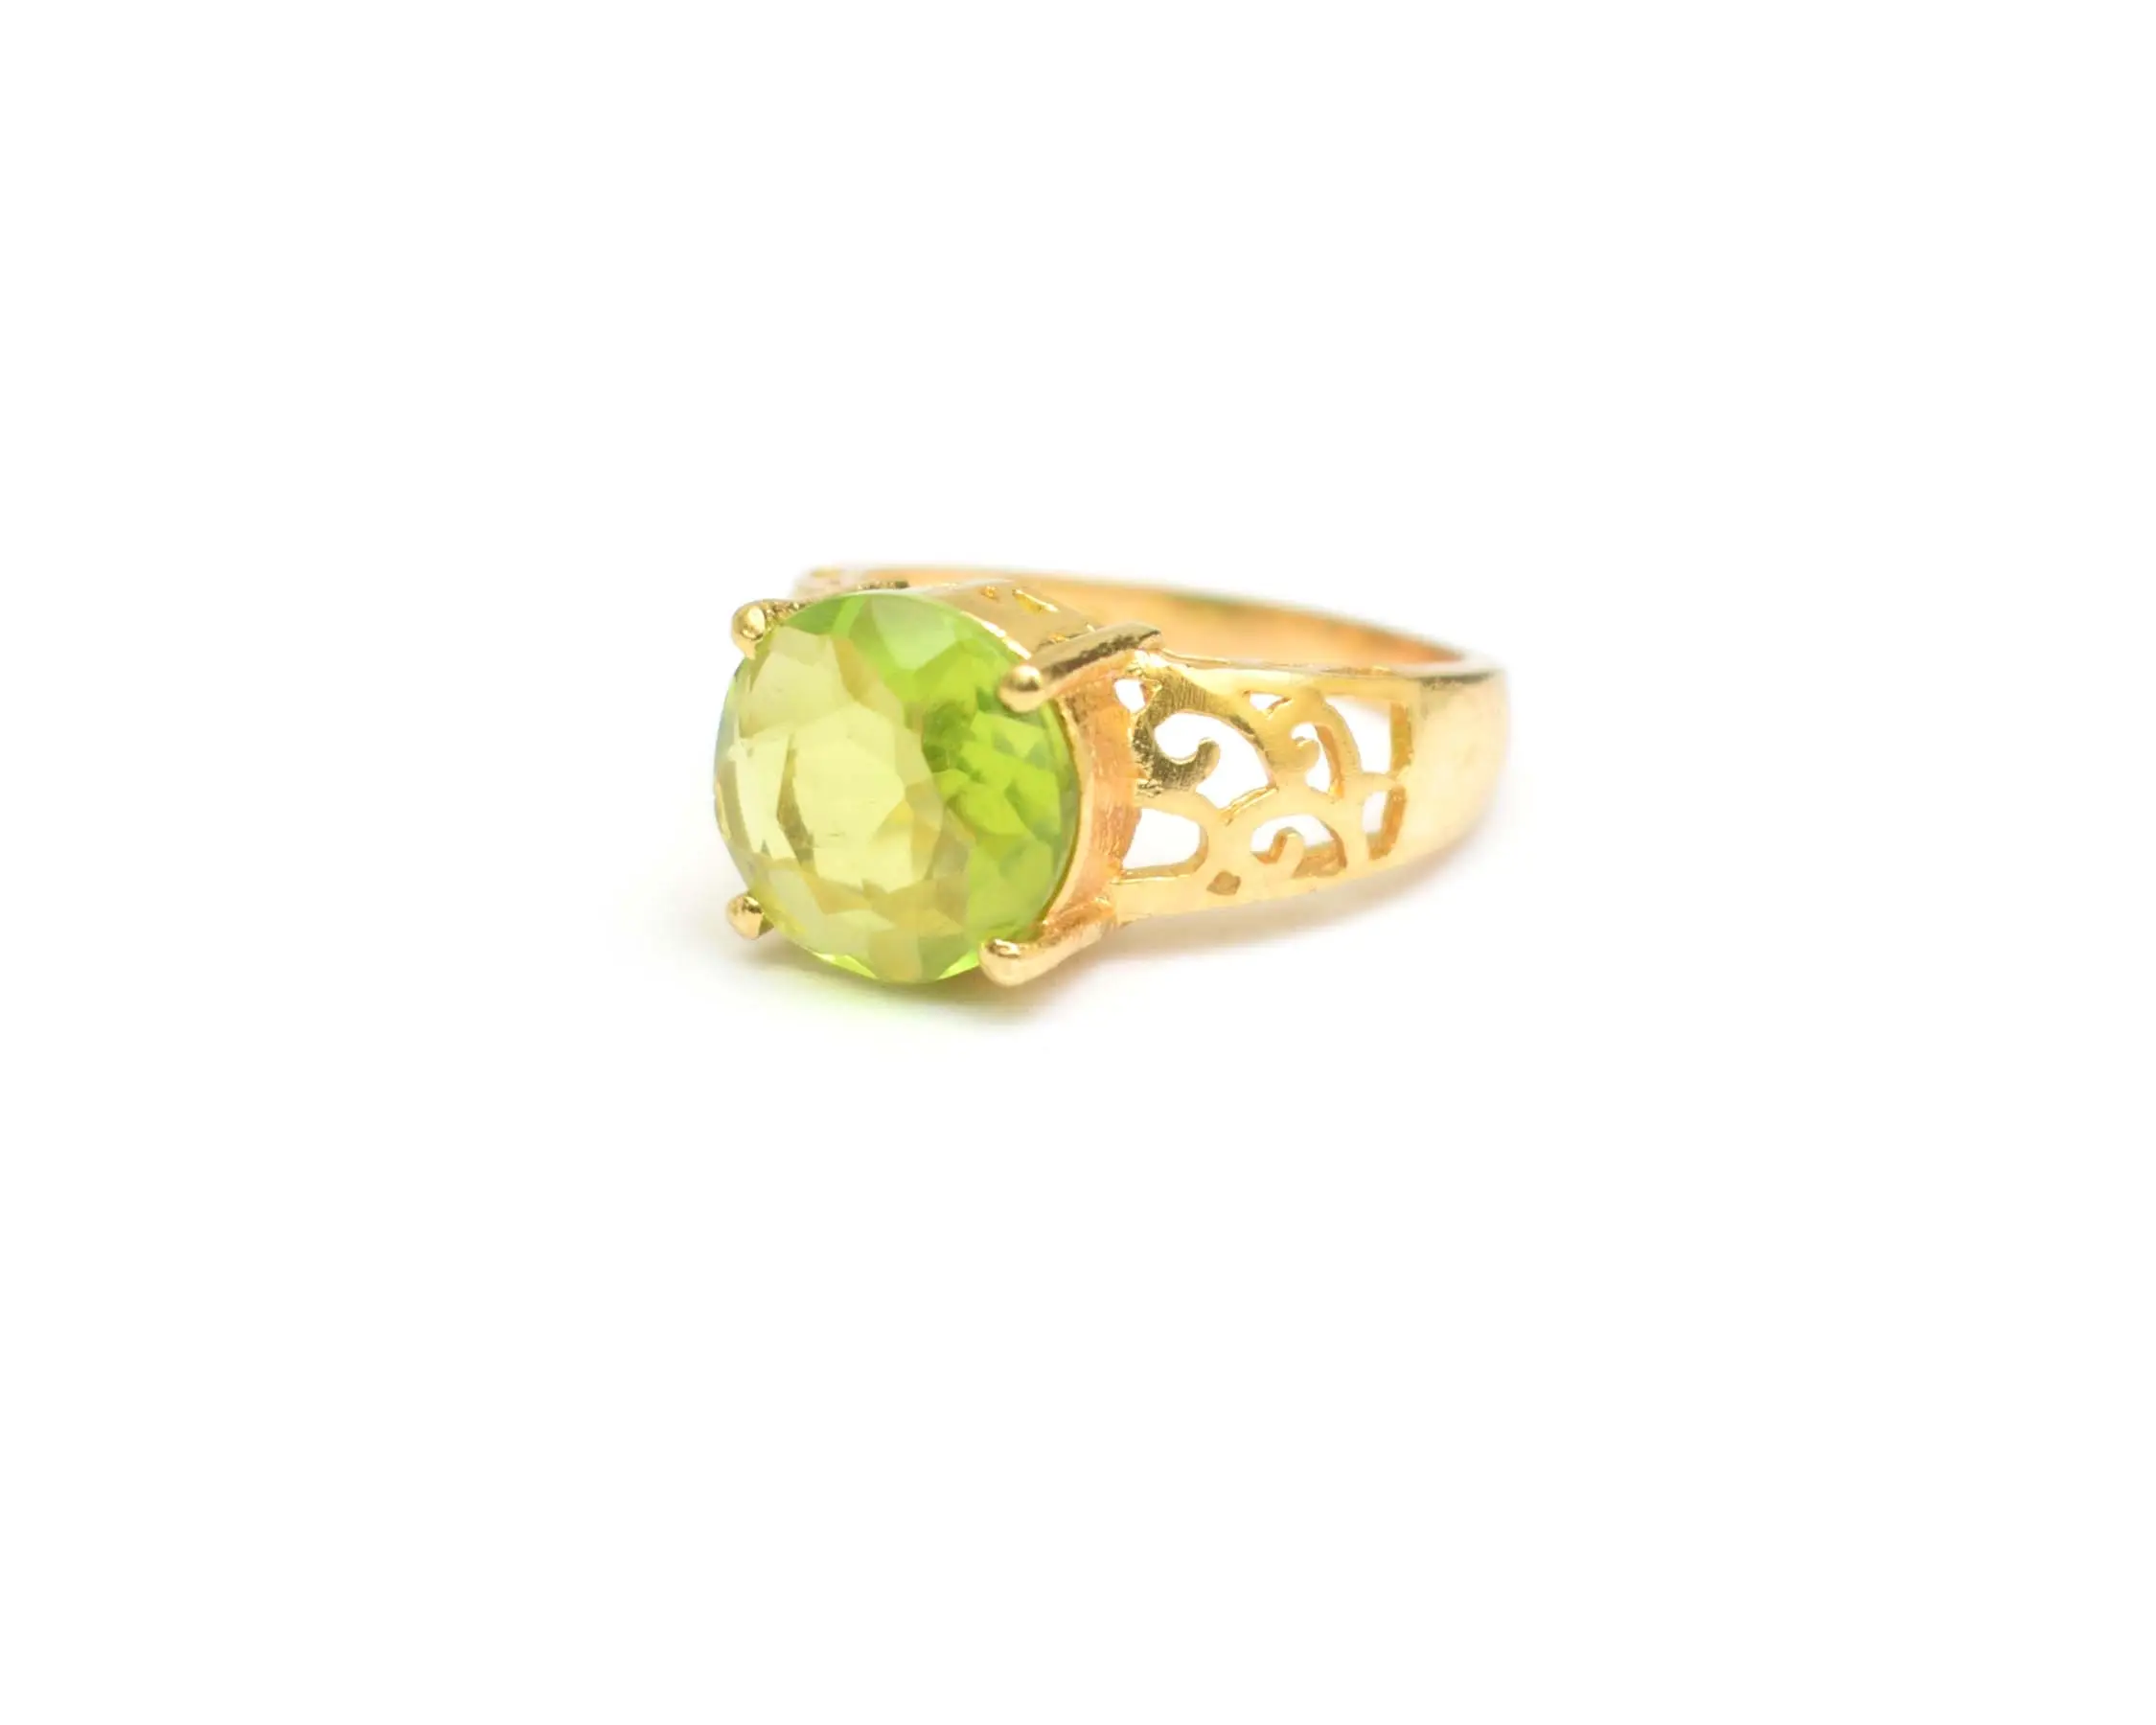 पुरुषों की फैशन सगाई की अंगूठी के लिए मल्टी जेमस्टोन ज्वेलरी गोल आकार की गोल्ड प्लेटेड सर्वश्रेष्ठ वेलेंटाइन उपहार